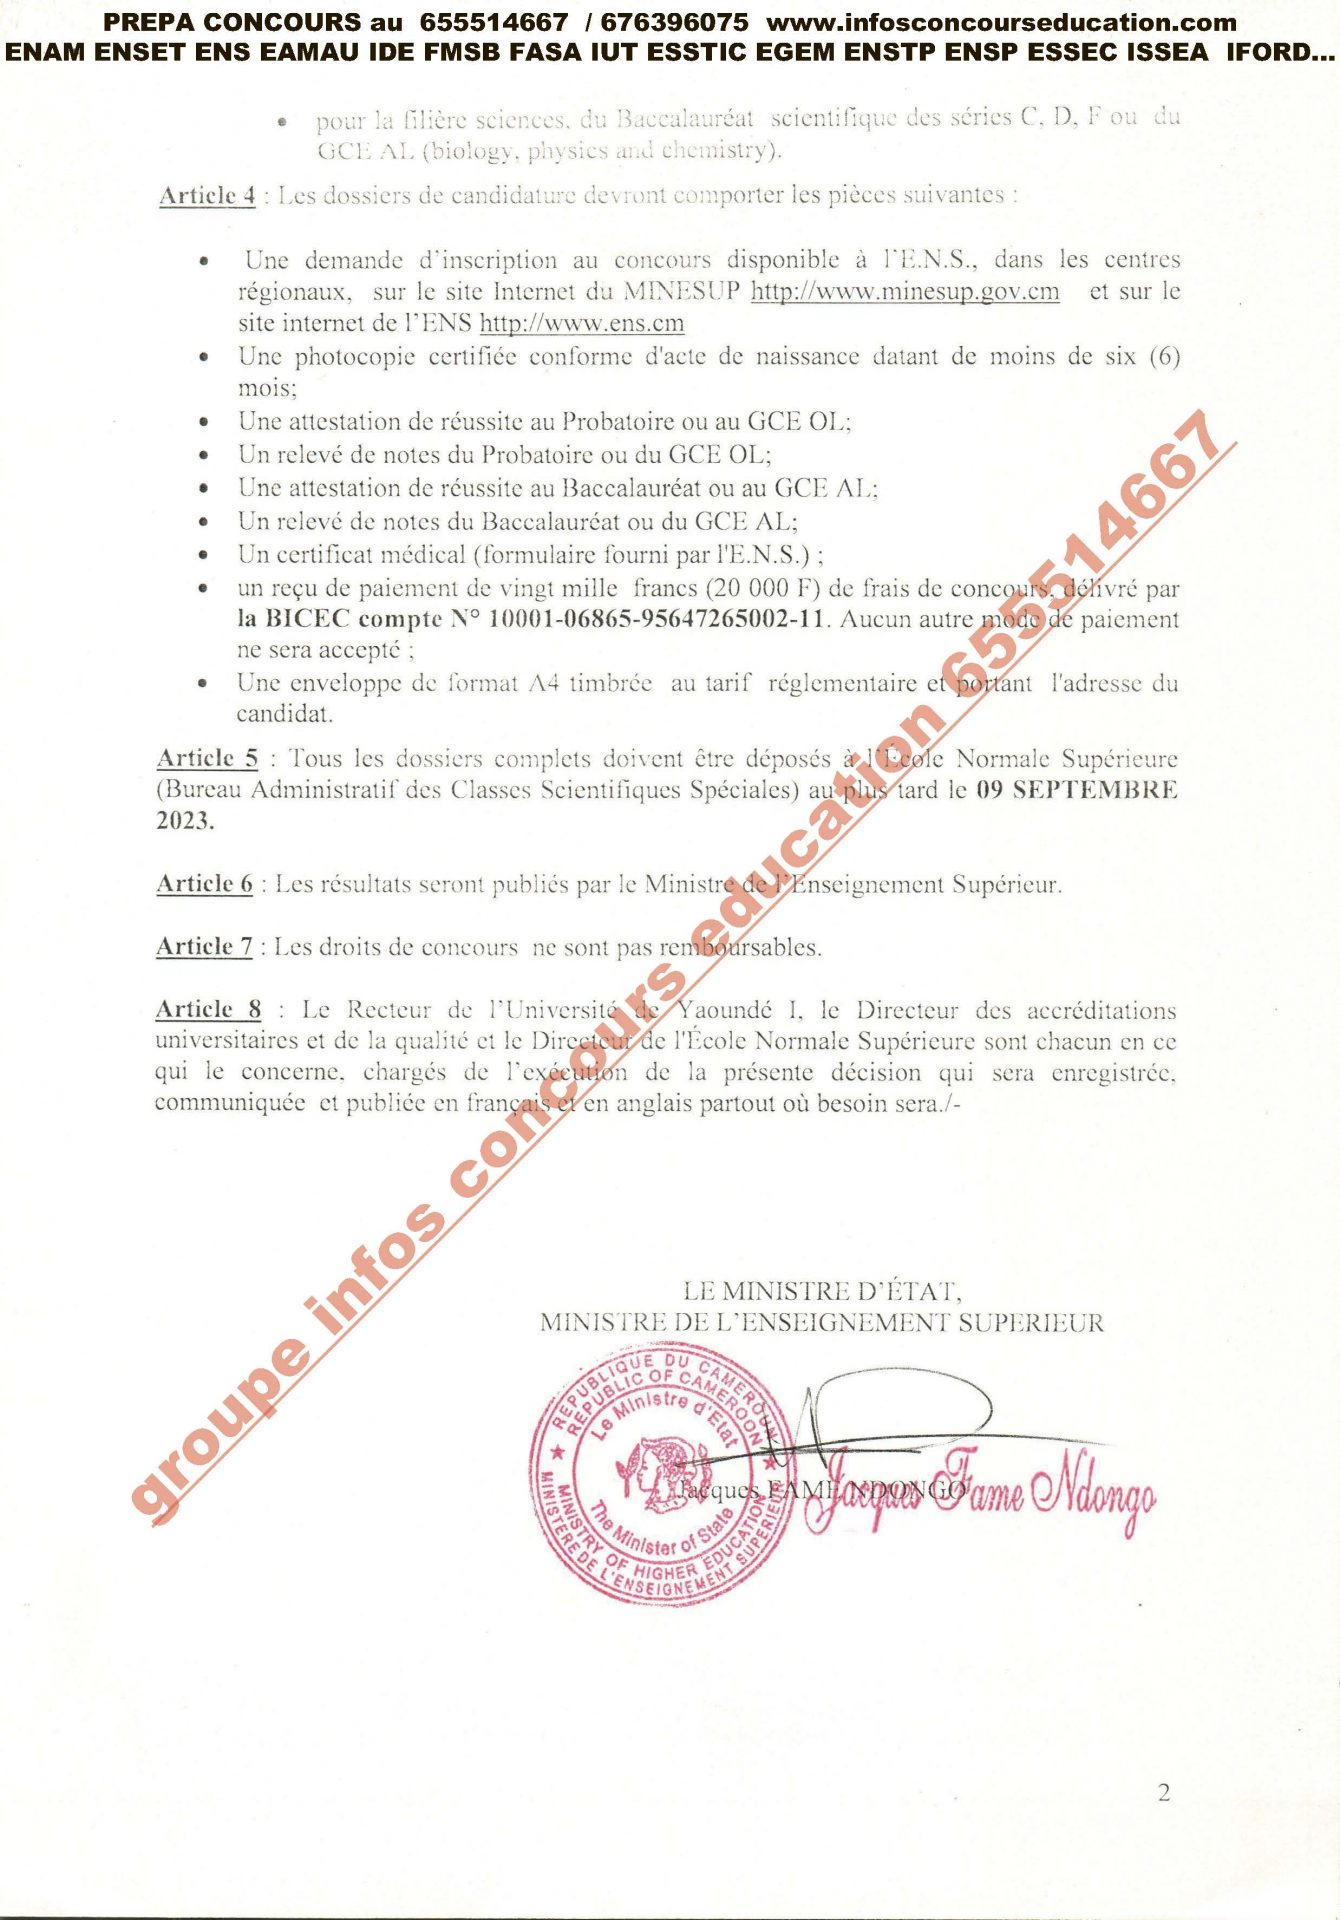 Concours d'entrée en Classes Scientifiques Spéciales de l'Ecole Normale Supérieure de l'Université de Yaoundé I année académique 2023.